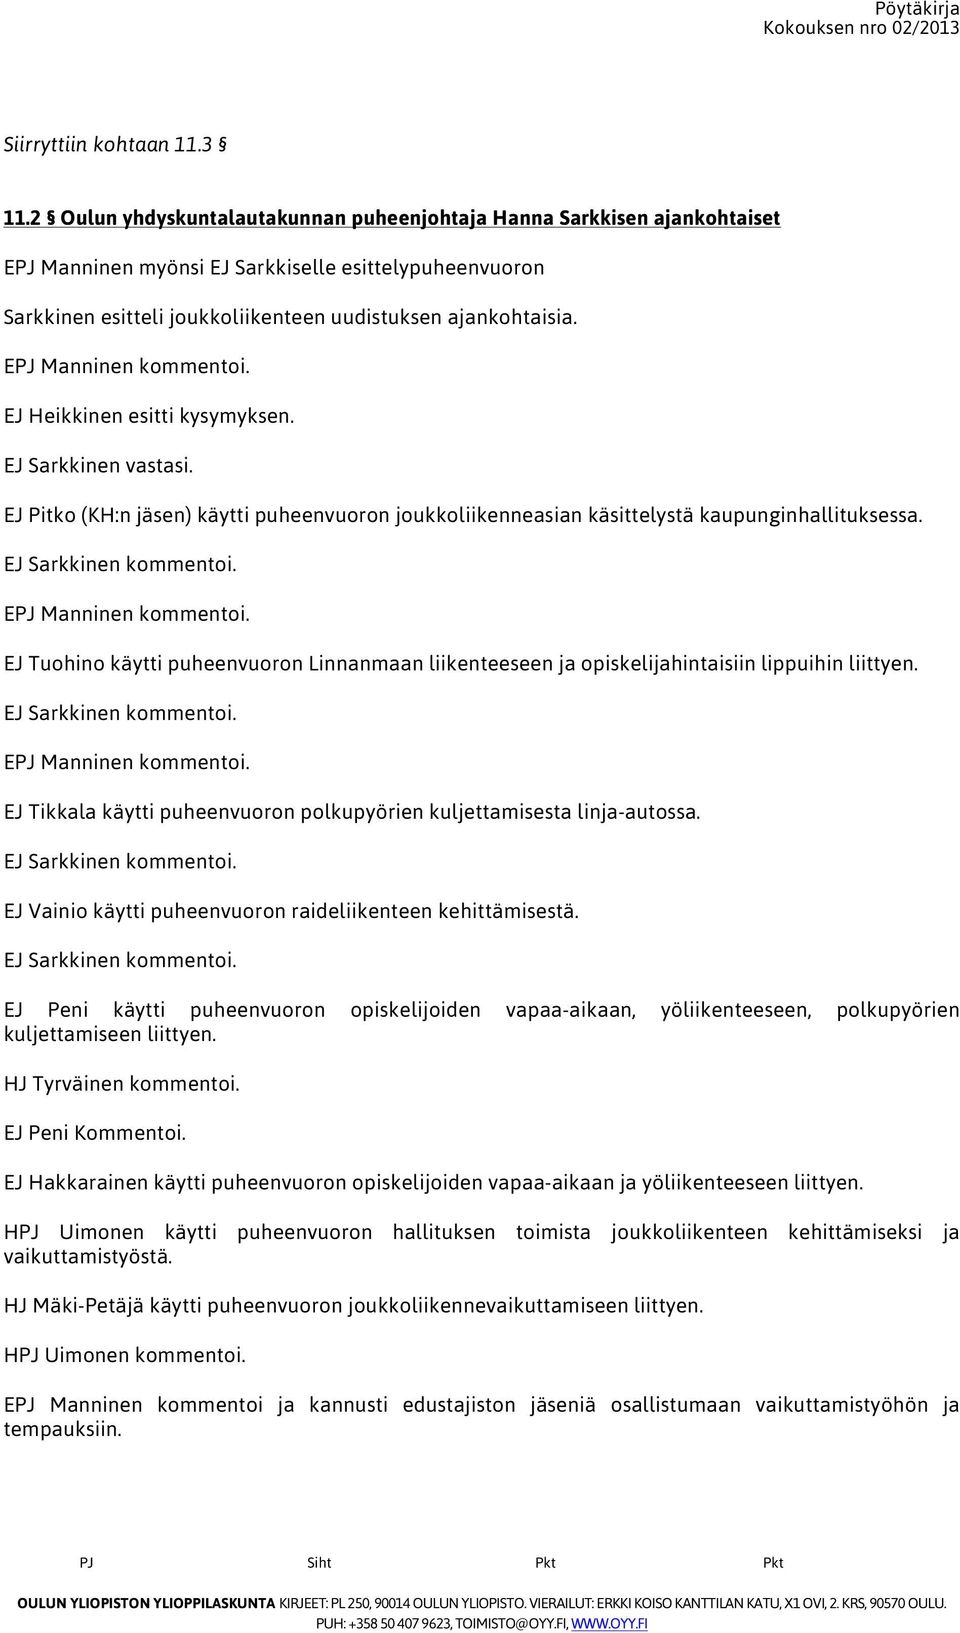 EPJ Manninen kommentoi. EJ Heikkinen esitti kysymyksen. EJ Sarkkinen vastasi. EJ Pitko (KH:n jäsen) käytti puheenvuoron joukkoliikenneasian käsittelystä kaupunginhallituksessa. EJ Sarkkinen kommentoi.